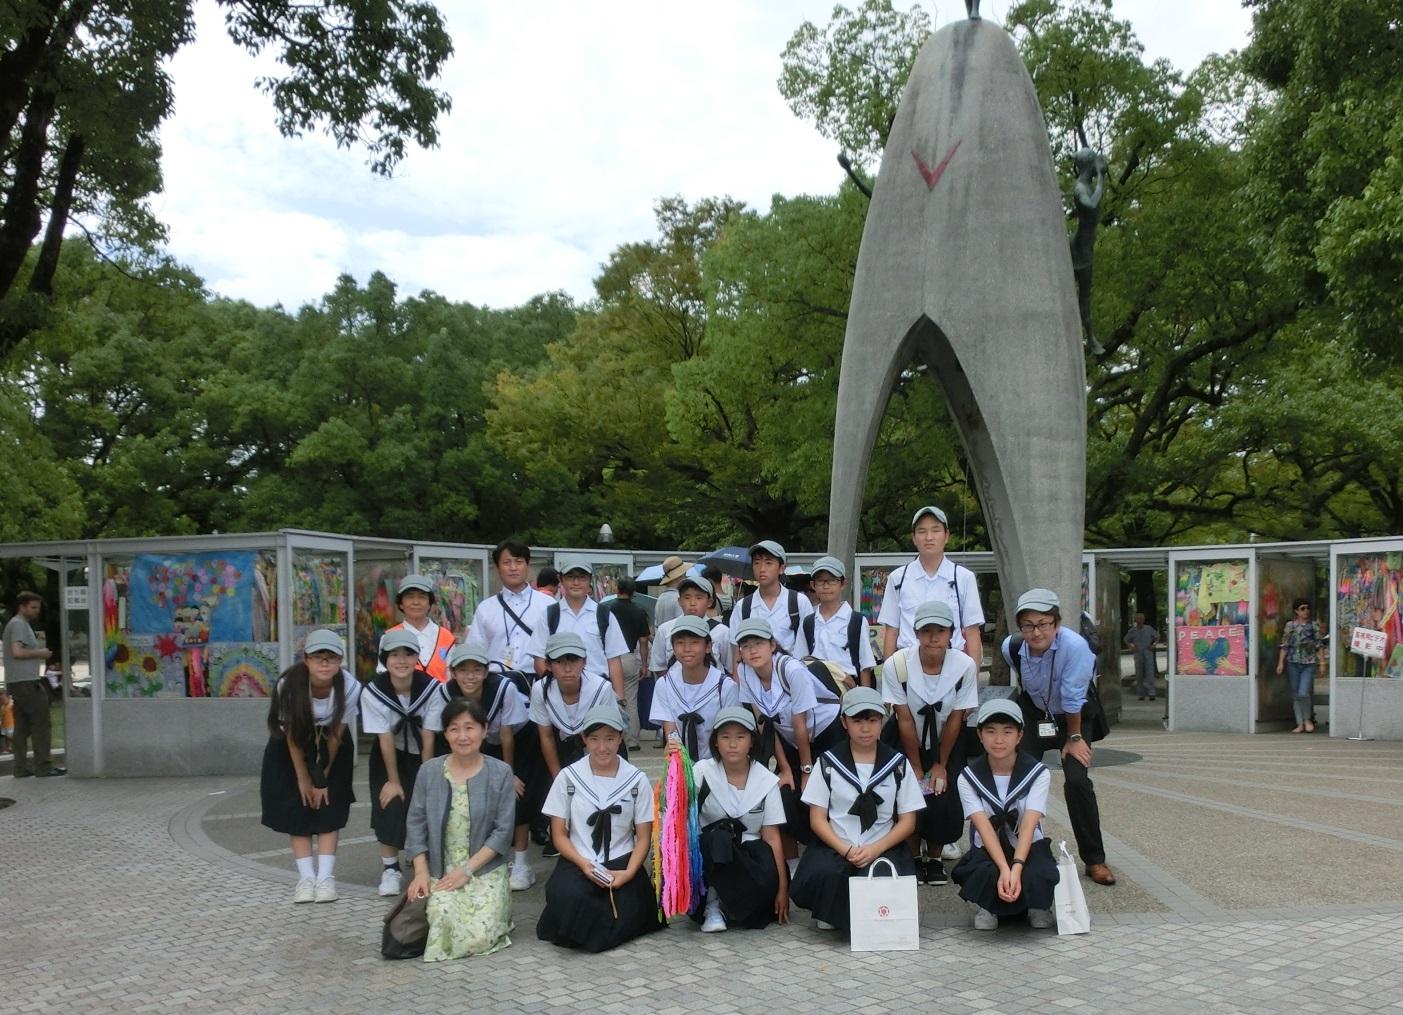 原爆の子の像の下で生徒達が笑顔で写っており、中央の女性生徒が千羽鶴を手に持って写っている集合写真